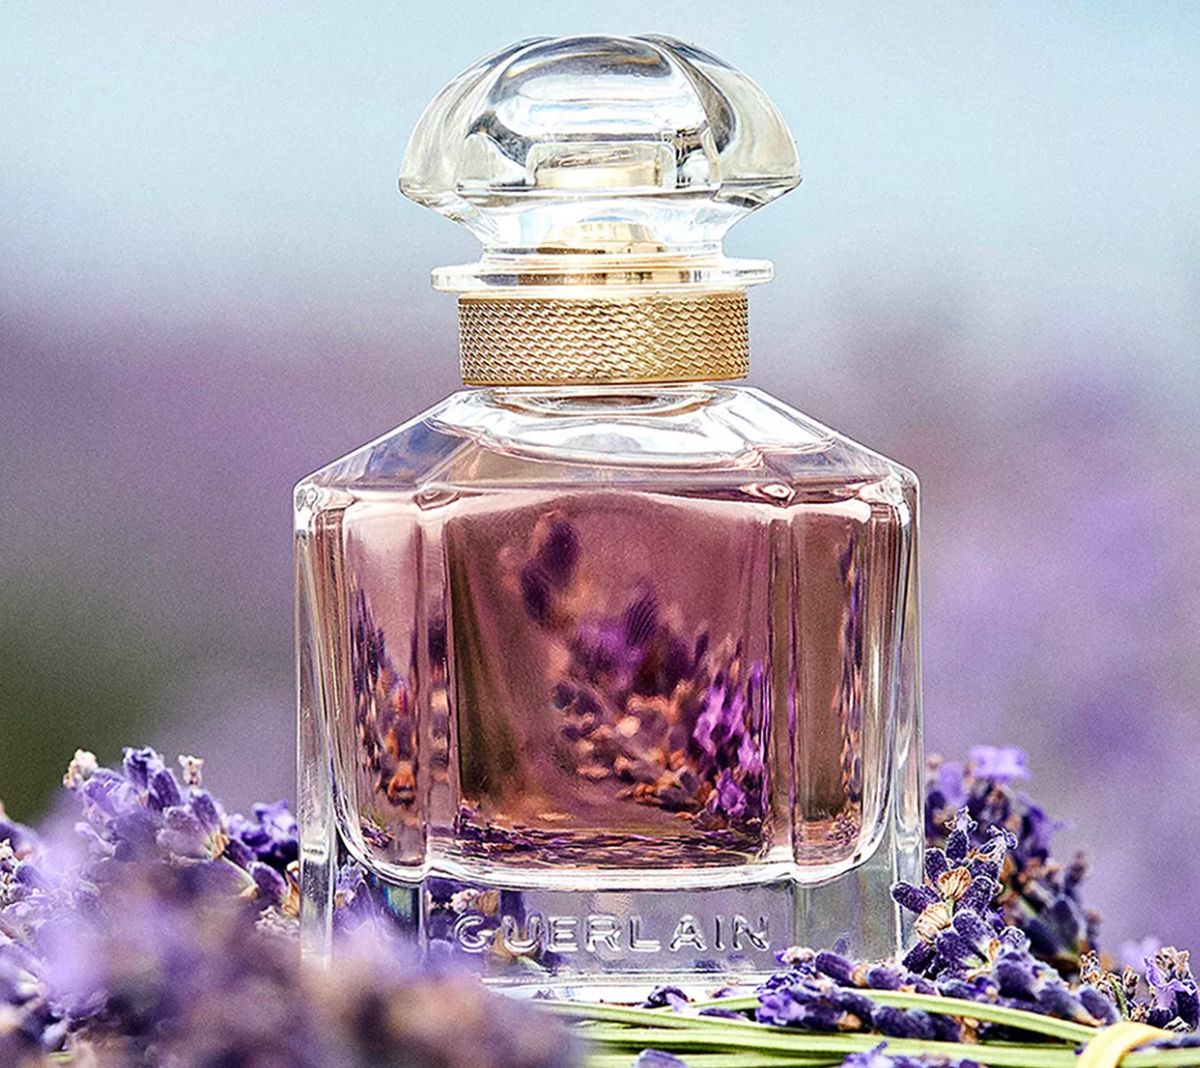 guerlain Mon Guerlain Eau de Parfum Spray surrounded by lavender blooms 